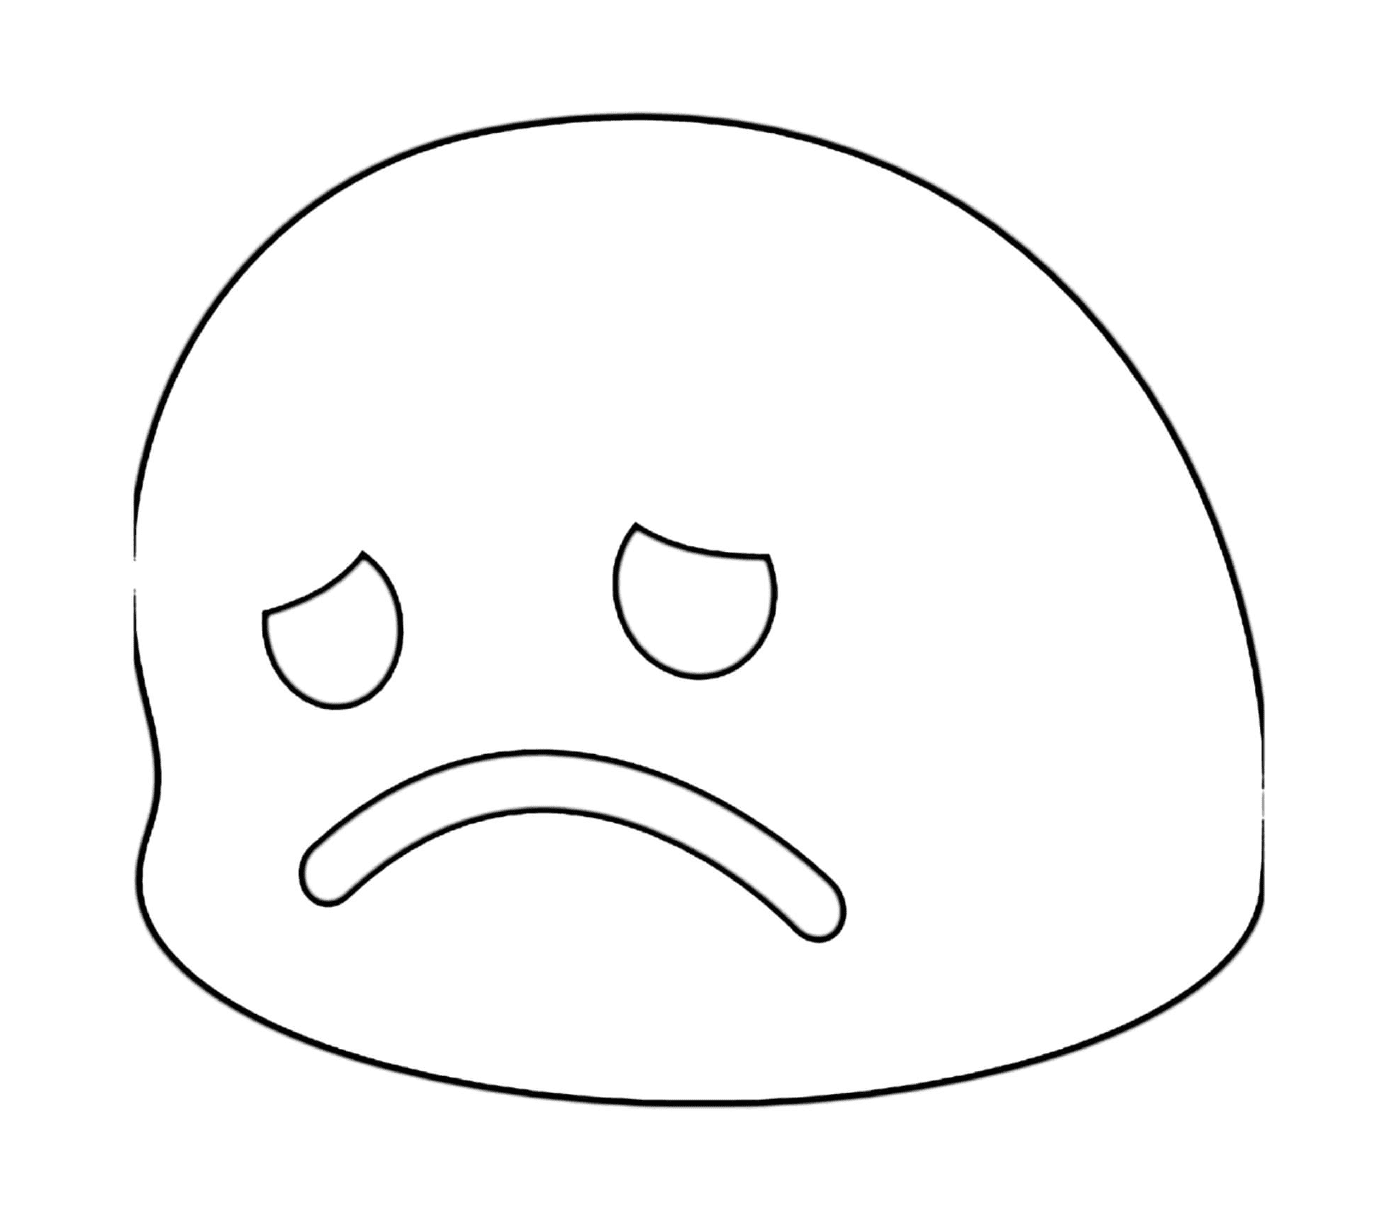  A sad face 